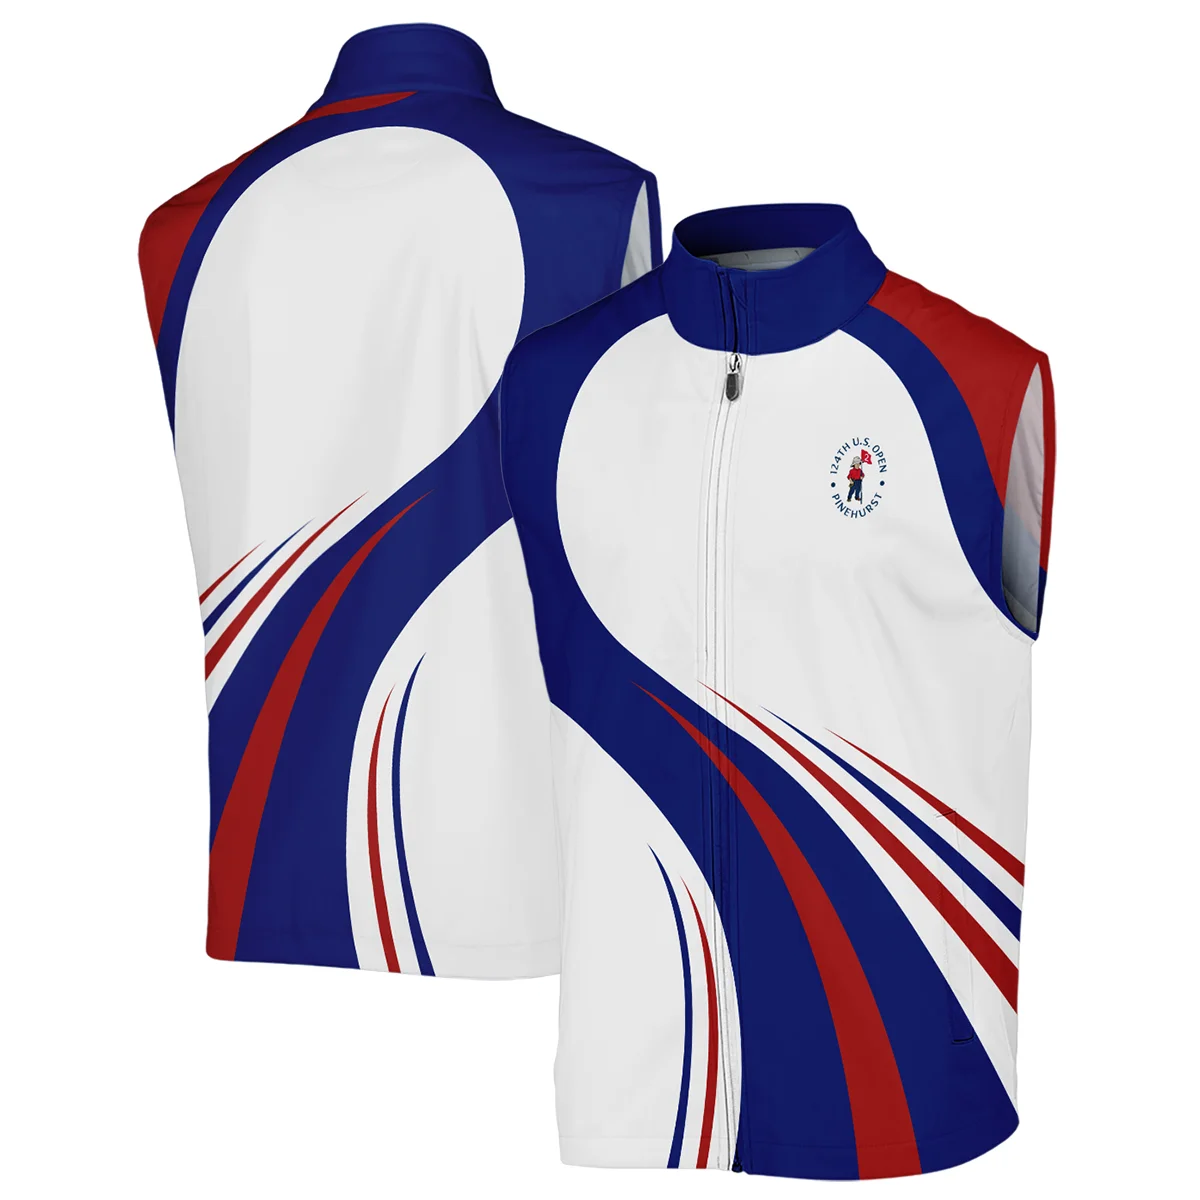 Callaway 124th U.S. Open Pinehurst Golf Blue Red White Background Sleeveless Jacket Style Classic Sleeveless Jacket